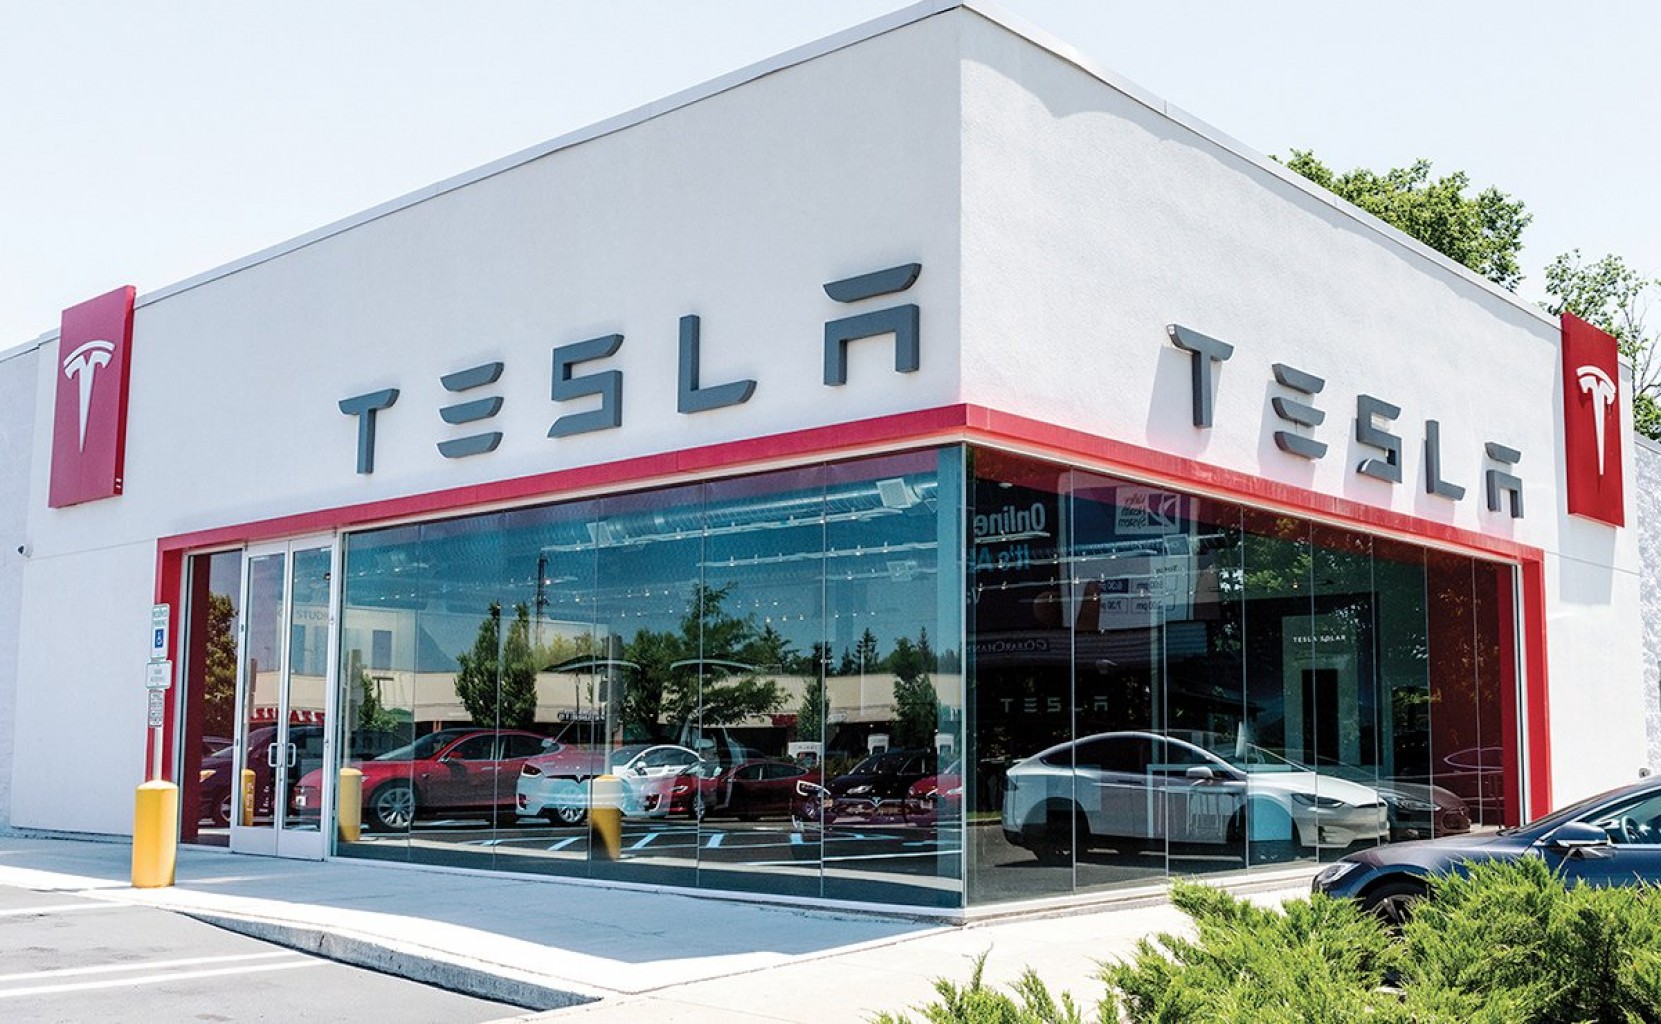 Invitan a Trasladar la Sede de Tesla a Oklahoma